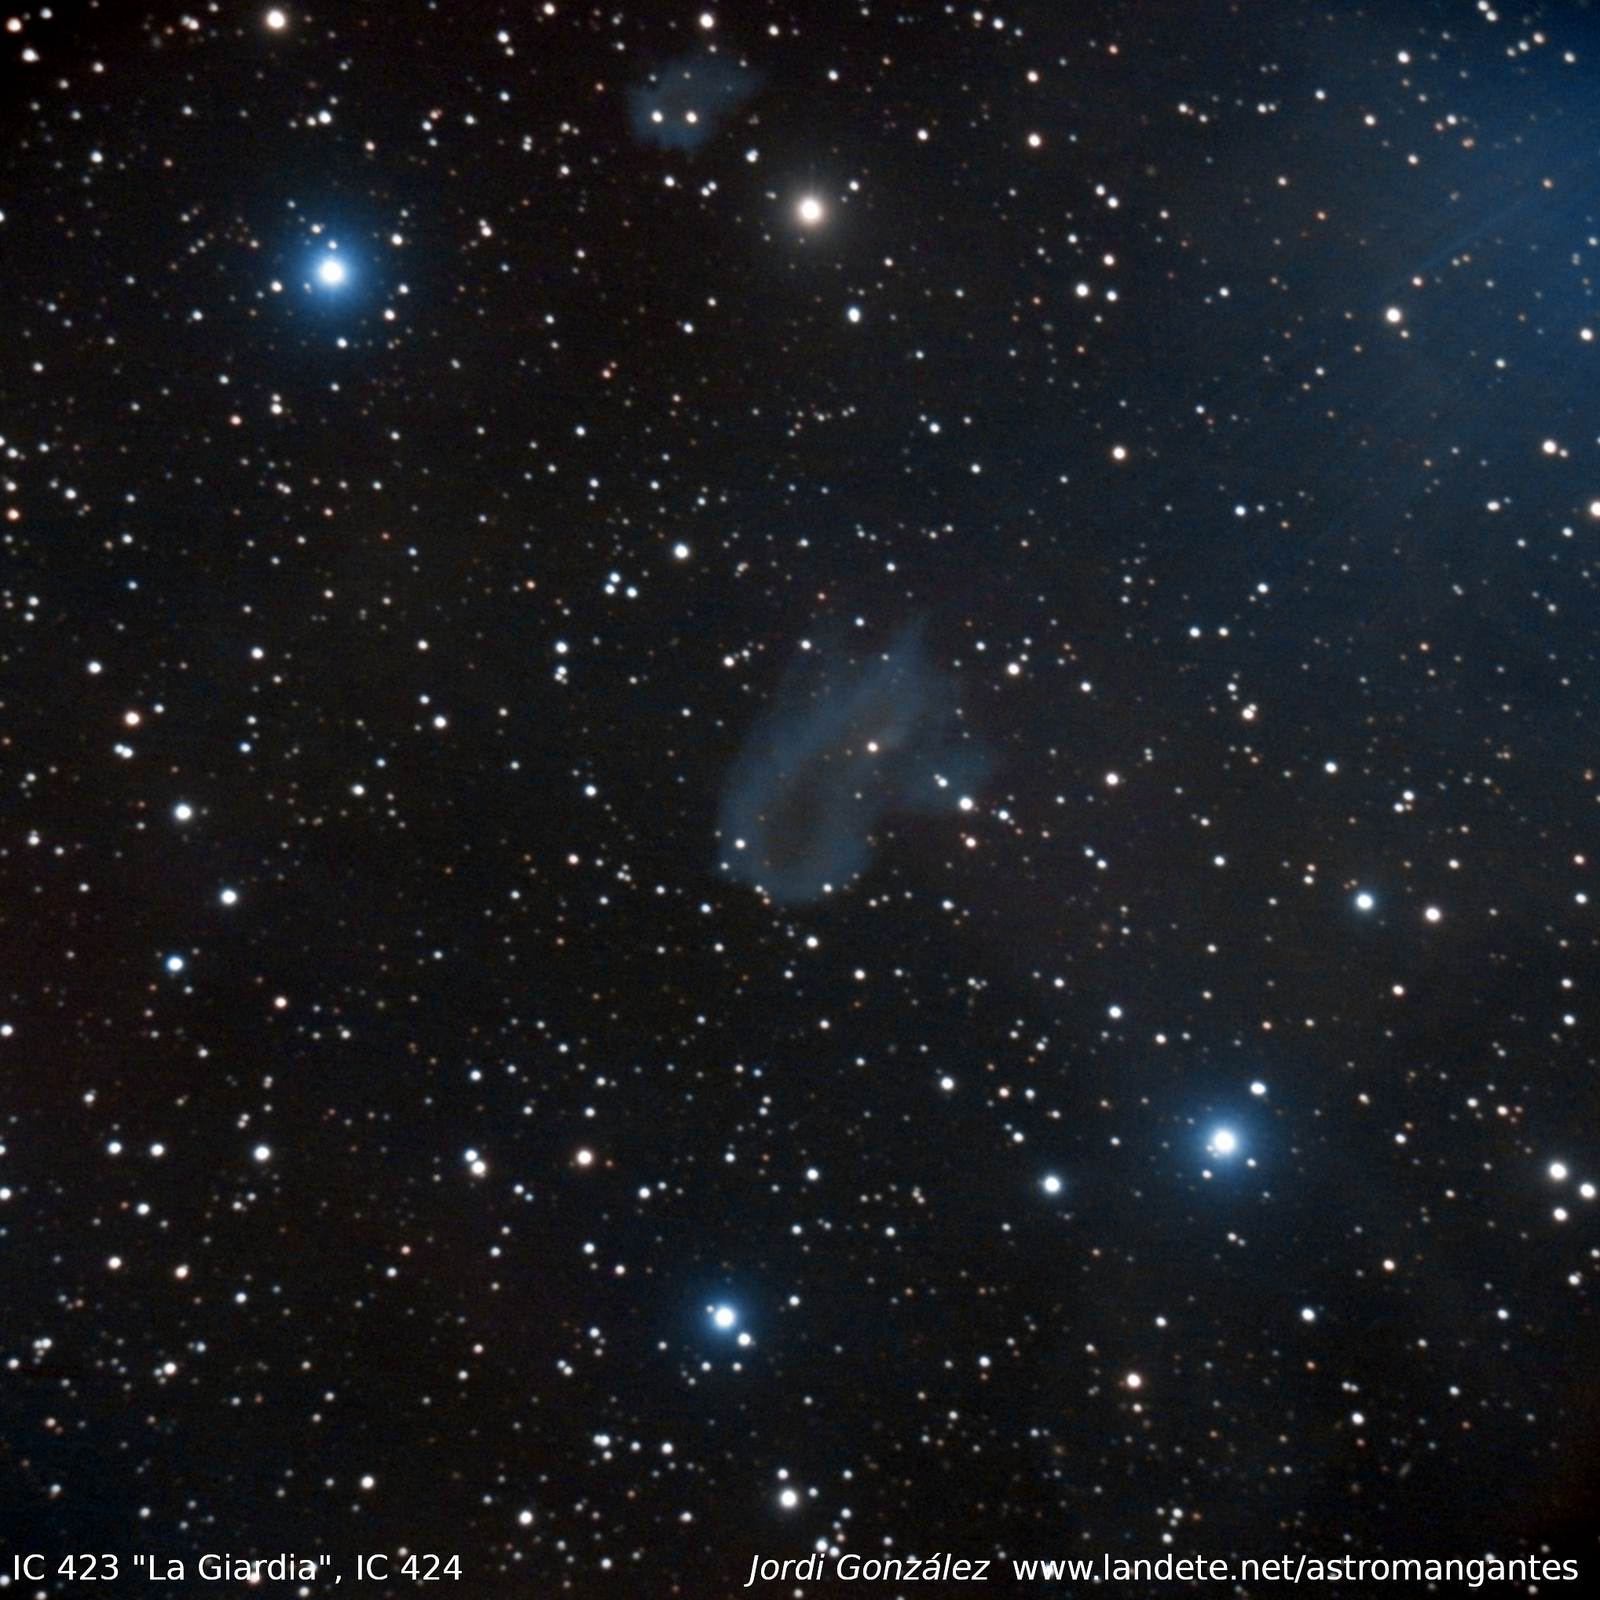 IC 423 "La Giardia" + IC 424